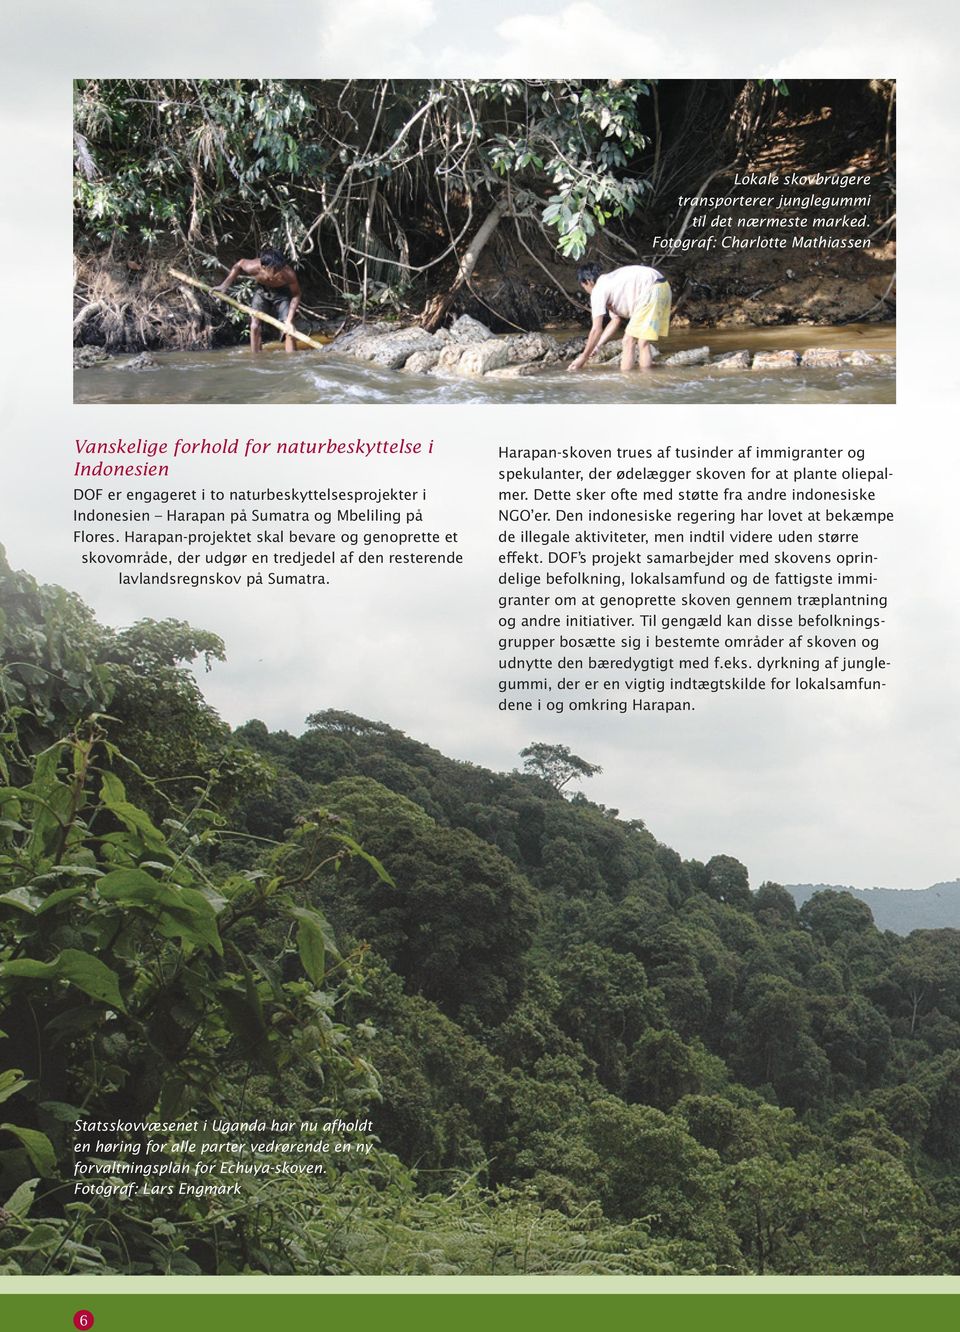 Harapan-projektet skal bevare og genoprette et skovområde, der udgør en tredjedel af den resterende lavlandsregnskov på Sumatra.